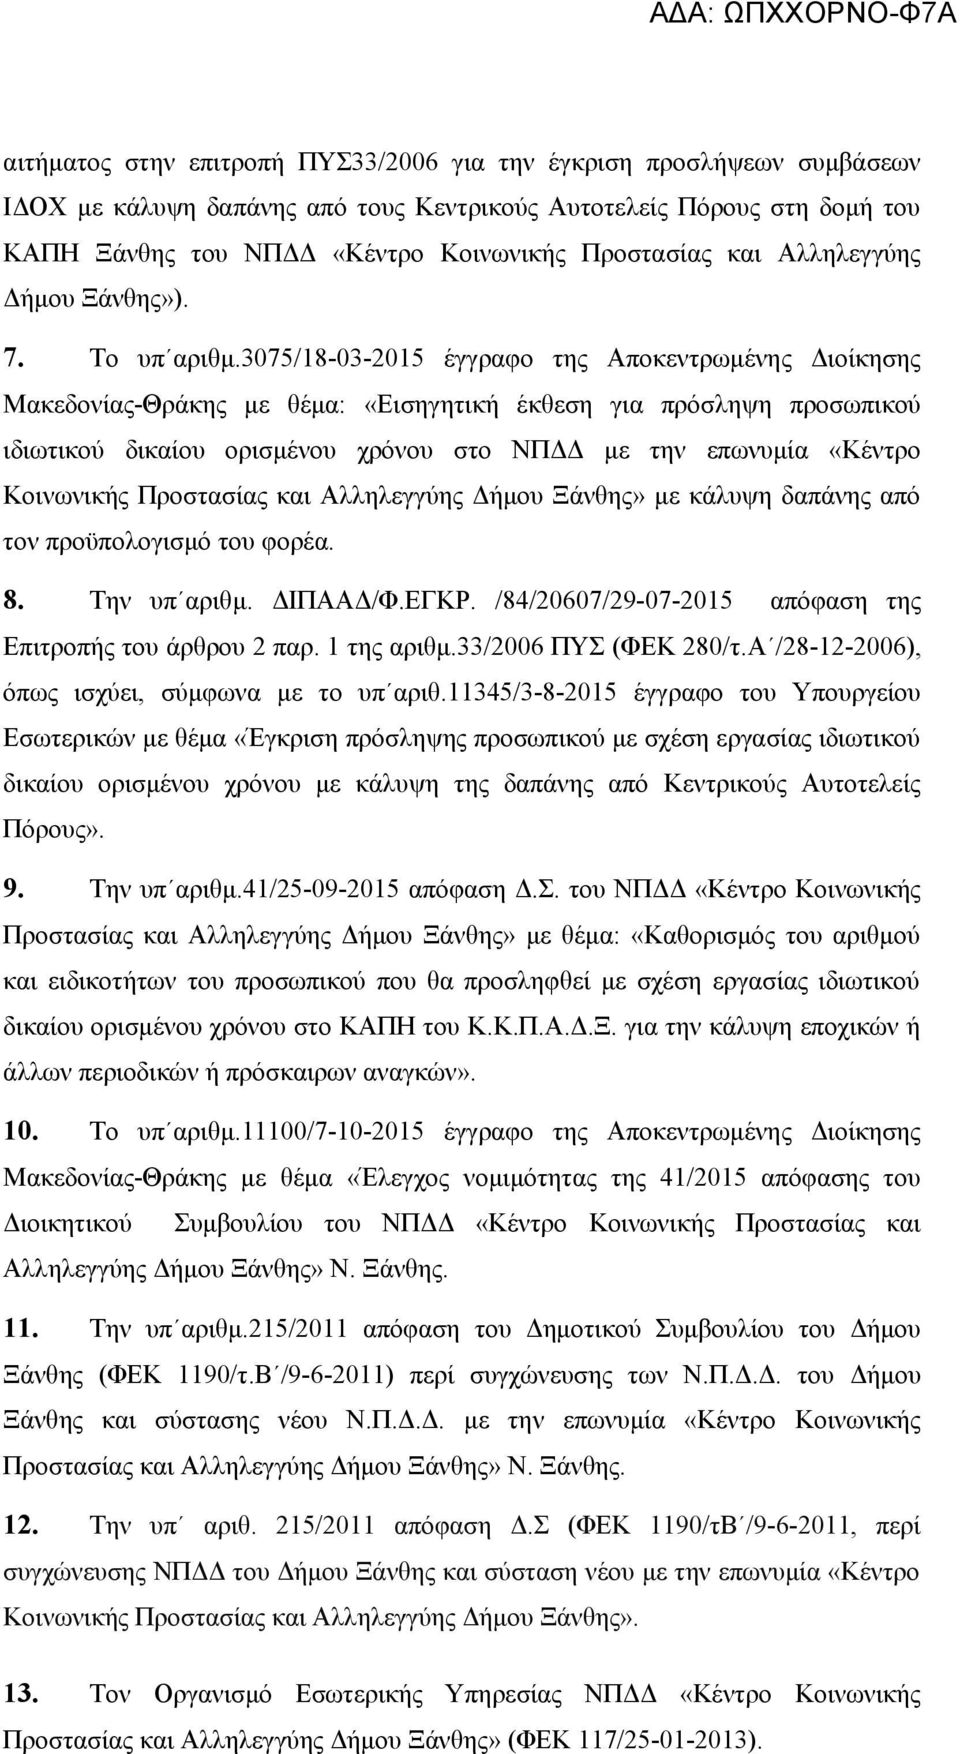 307/18-03-201 έγγραφο της Αποκεντρωμένης Διοίκησης Μακεδονίας-Θράκης με θέμα: «Εισηγητική έκθεση για πρόσληψη προσωπικού ιδιωτικού δικαίου ορισμένου χρόνου στο ΝΠΔΔ με την επωνυμία «Κέντρο Κοινωνικής